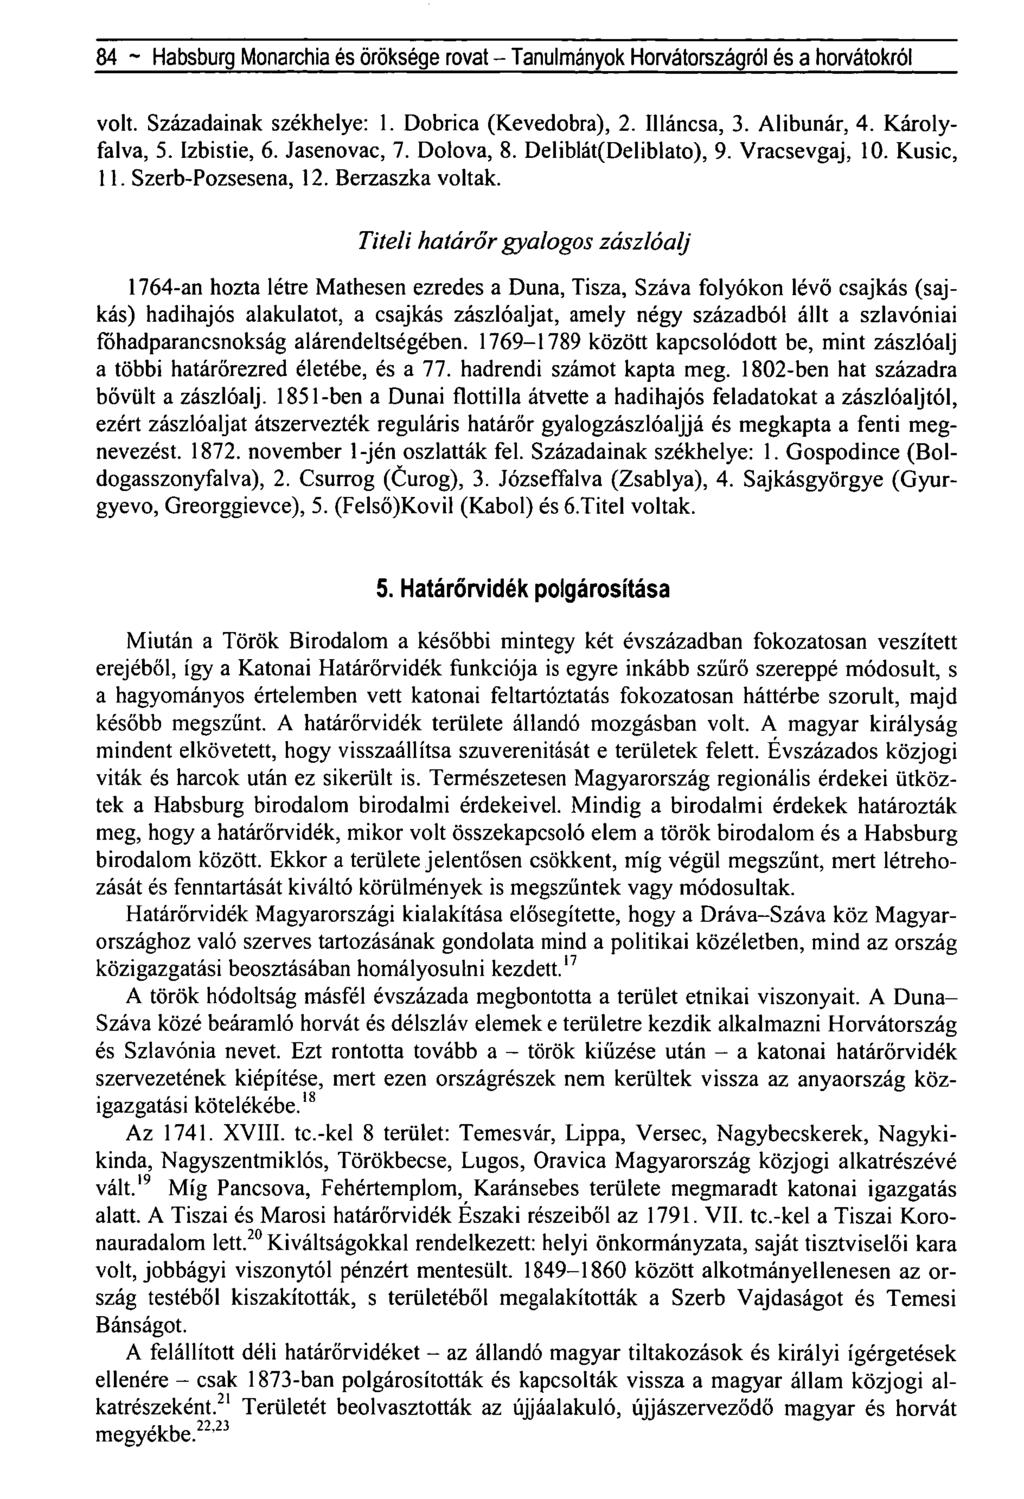 84 - Habsburg Monarchia és öröksége rovat - Tanulmányok Horvátországról és a horvátokról volt. Századainak székhelye: 1. Dobrica (Kevedobra), 2. Illáncsa, 3. Alibunár, 4. Károlyfalva, 5. Izbistie, 6.